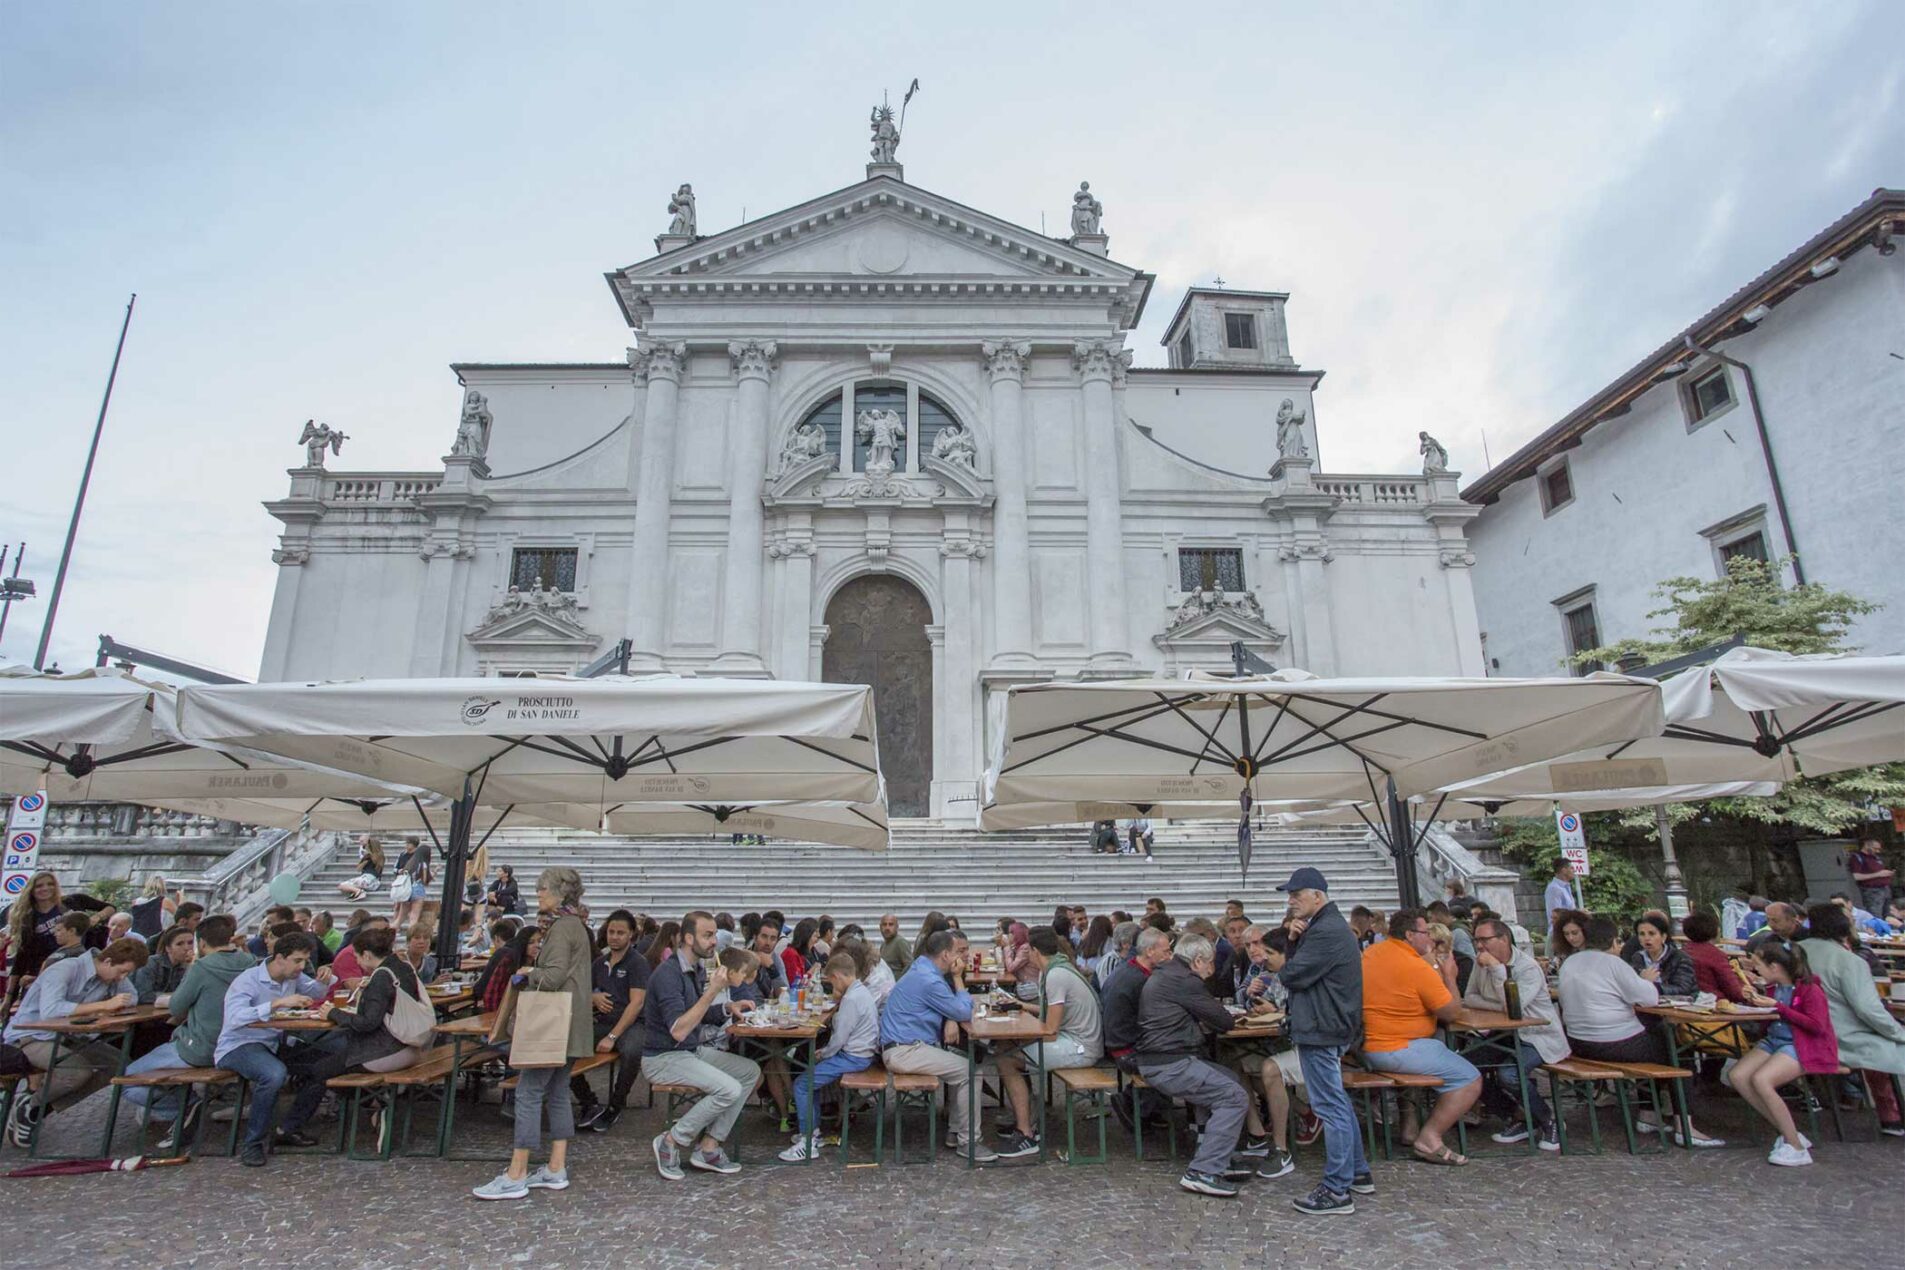 Aria di Friuli Venezia Giulia: a San Daniele è festa dal 26 al 29 agosto